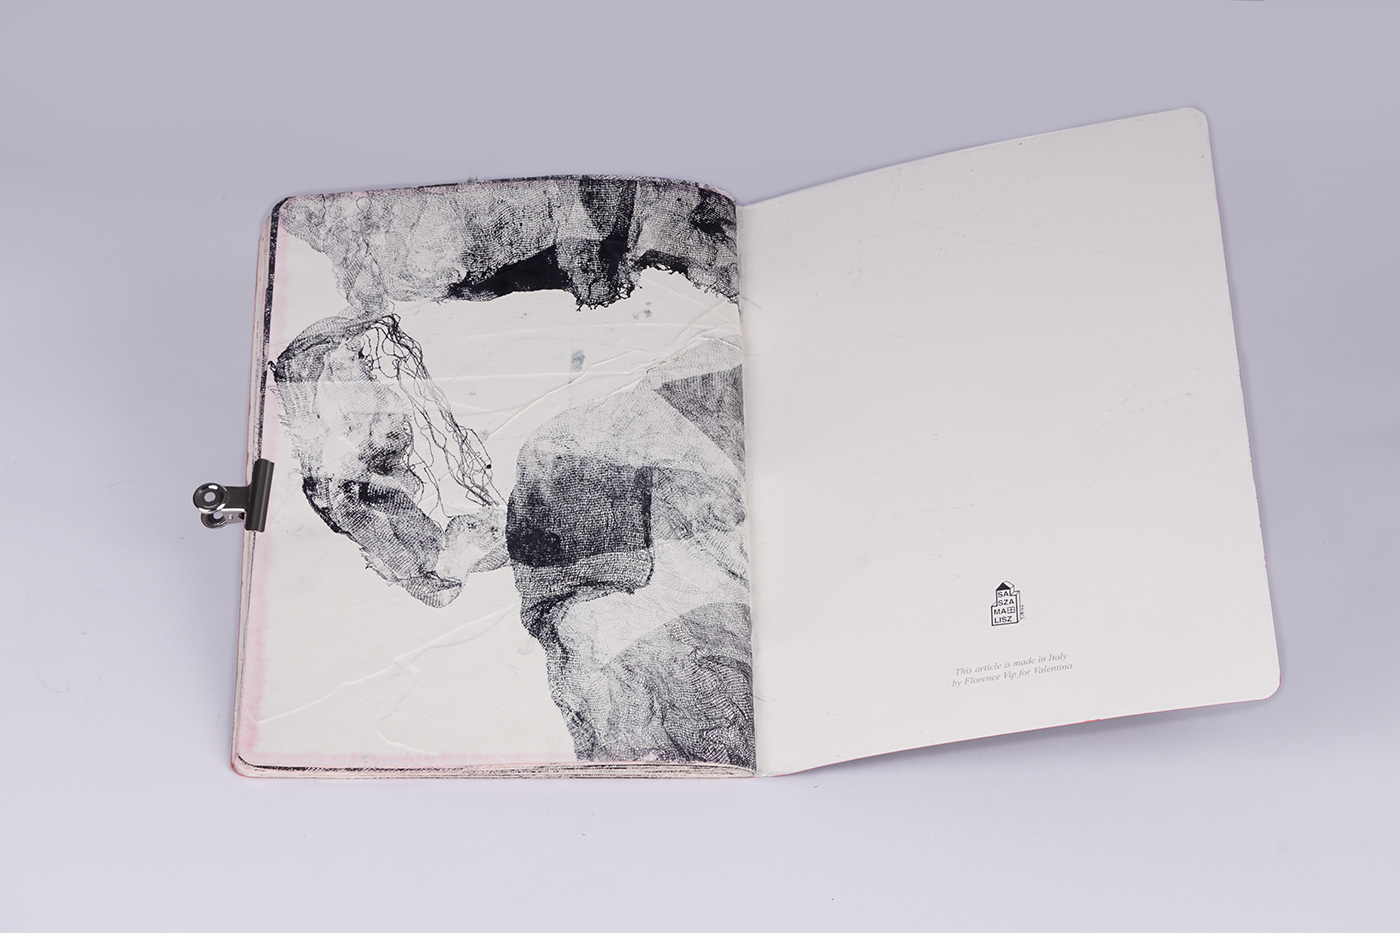 intaglio grafika artbook Wklęsłodruk illustracii GrafikaWarsztatowa artistbook rękodzieło   blackandwhite monoprint